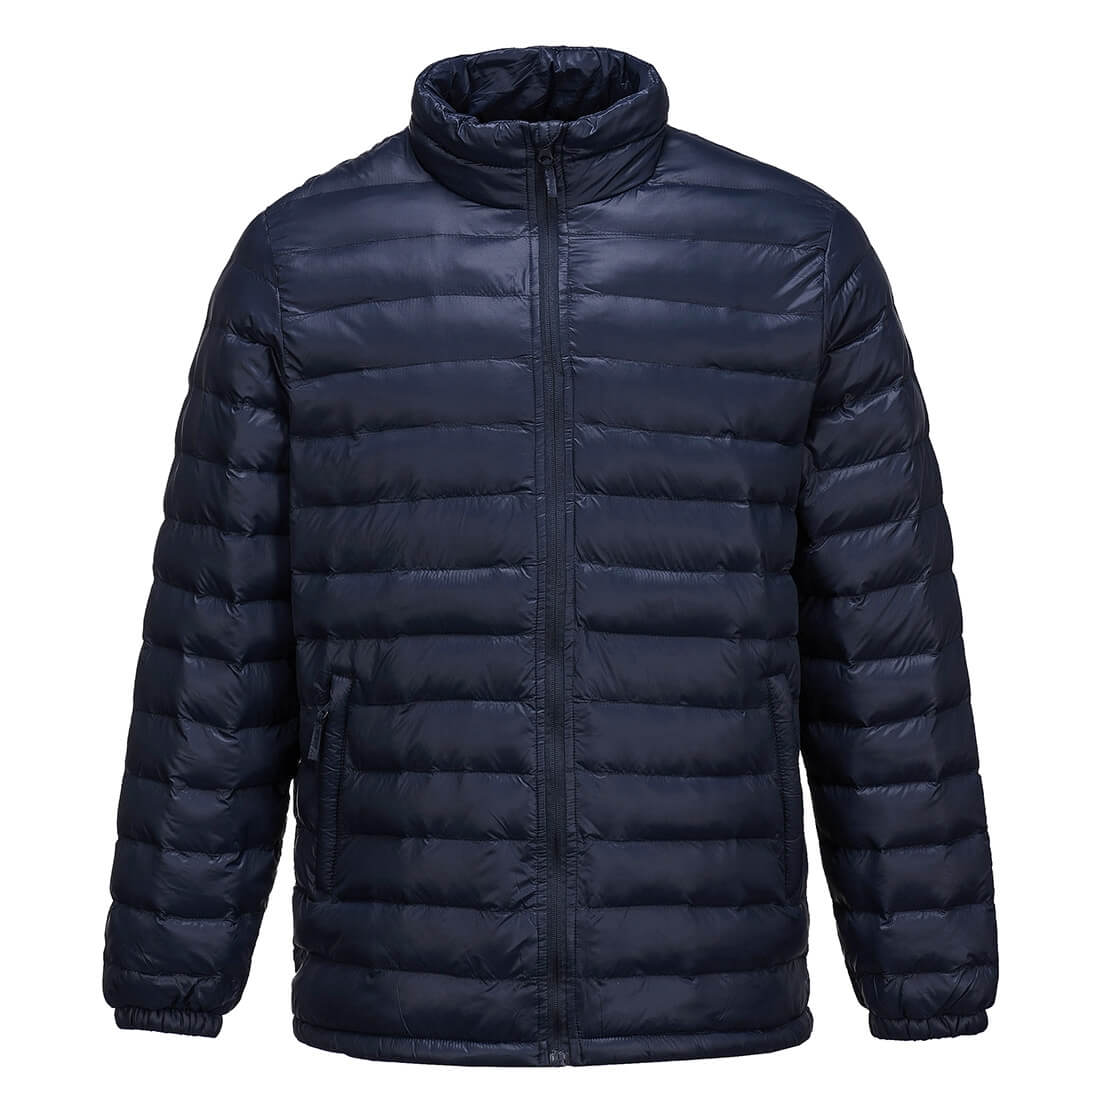 Aspen Jacket - Safetywear